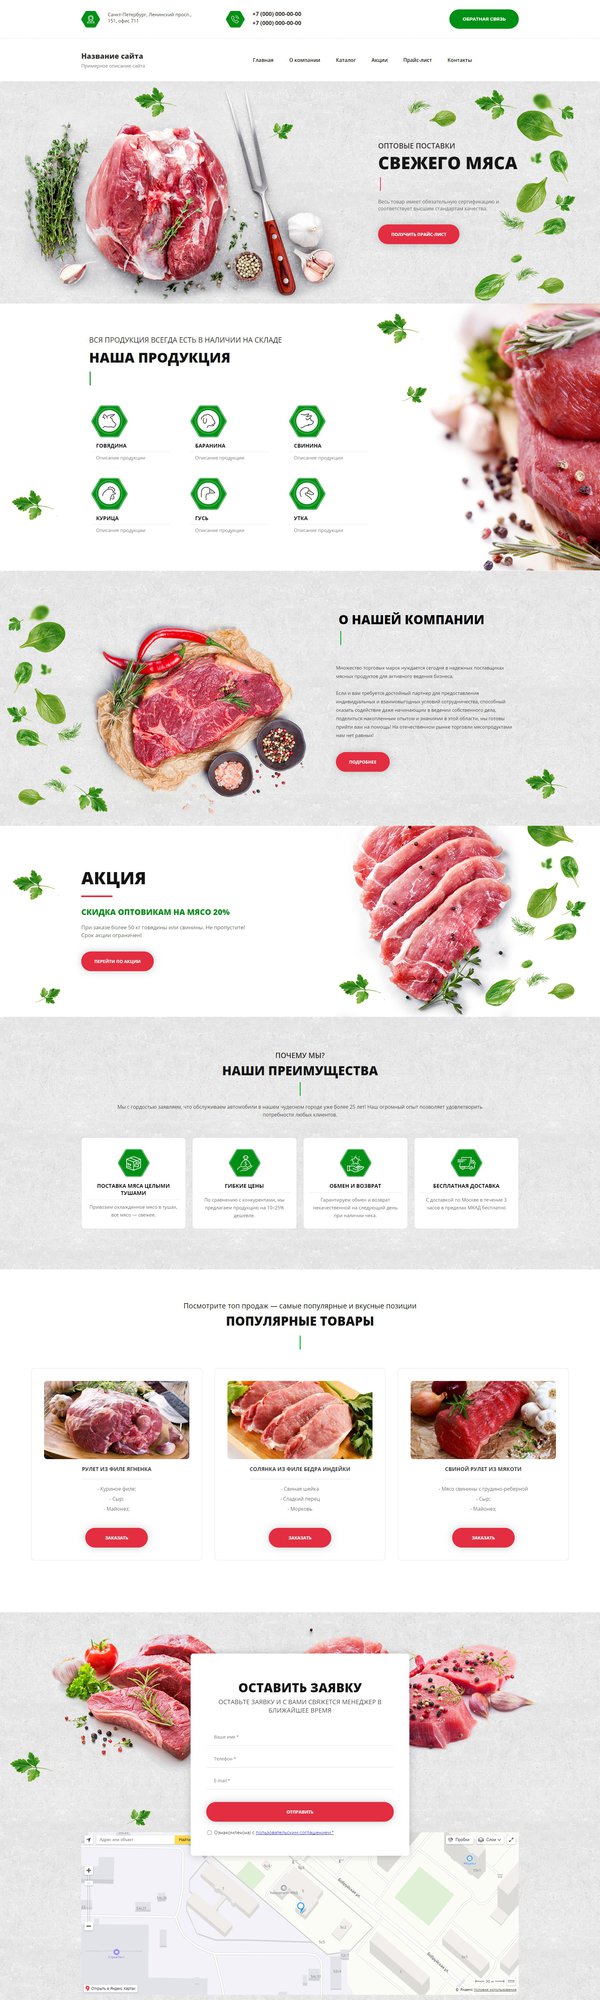 Готовый Сайт-Бизнес № 2727296 - Мясо, мясопродукты (Десктопная версия)